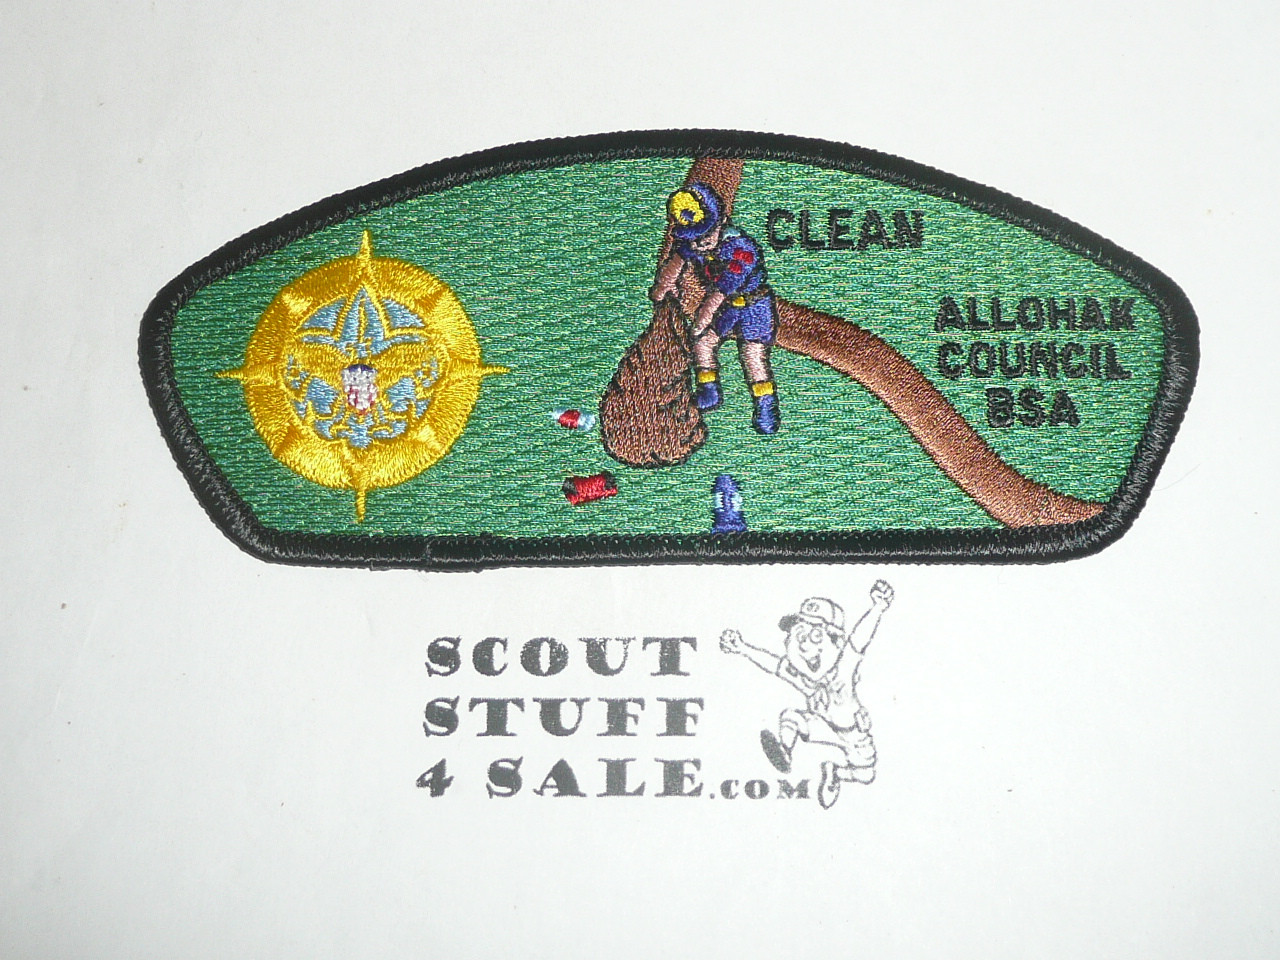 Allohak Council sa13 CSP - Scout